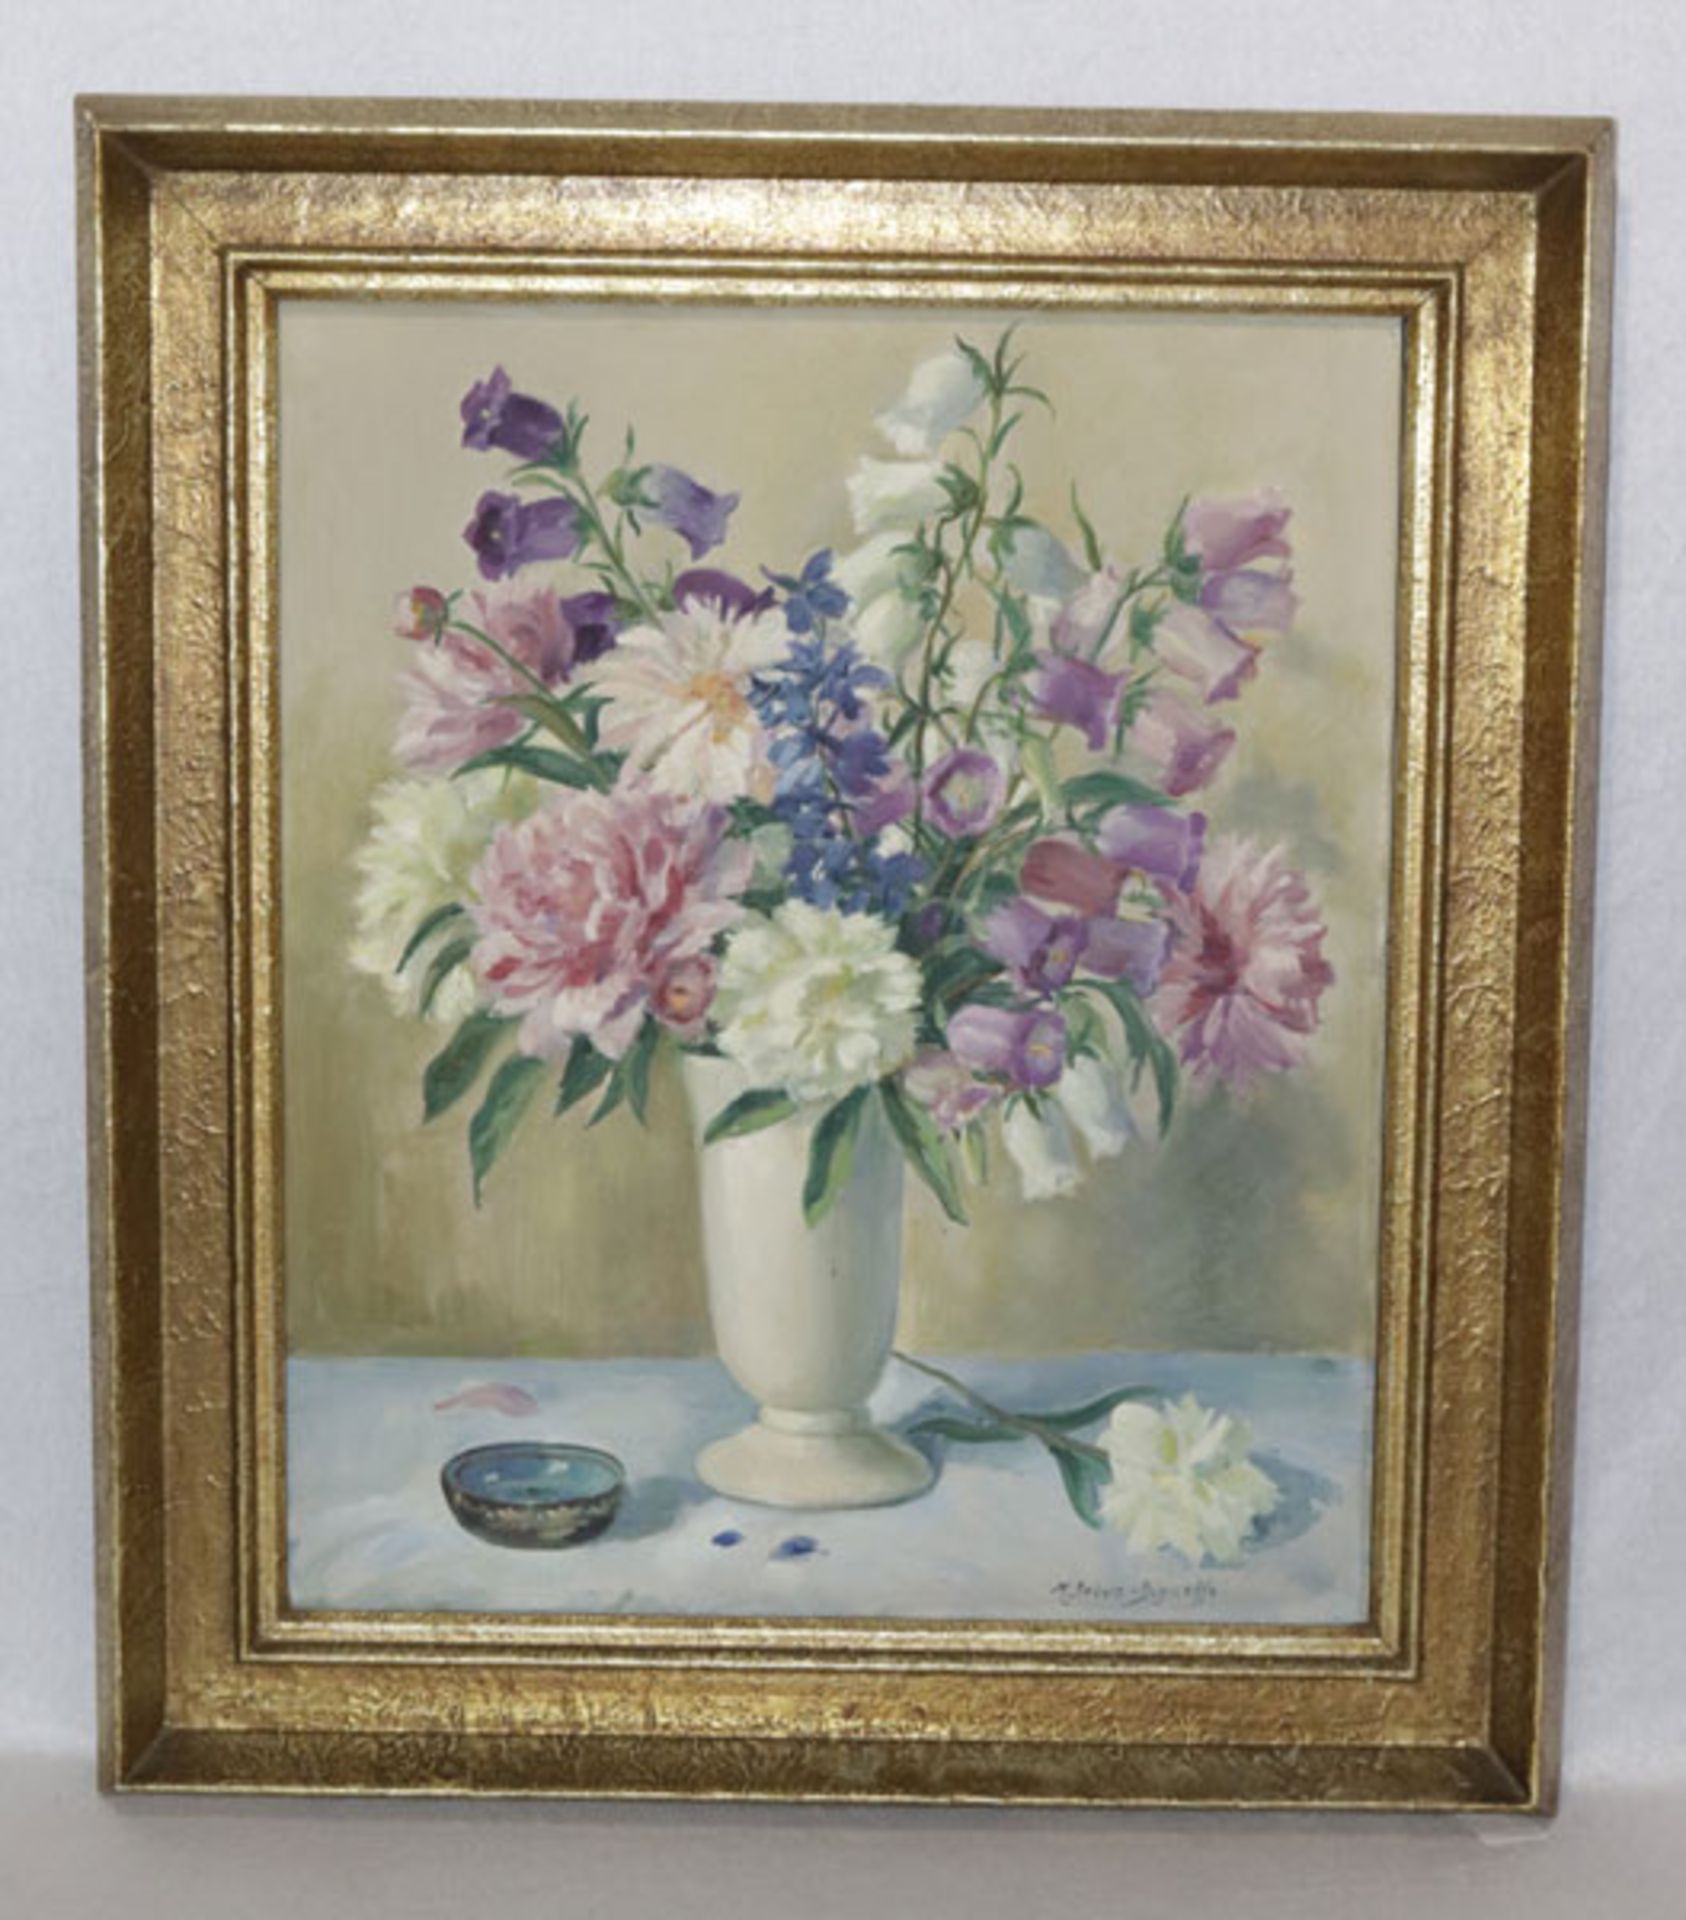 Gemälde ÖL/LW 'Blumenstillleben in Vase', signiert M. (Maria) Debus-Digneff, * 1876 Wiesbaden + 1956